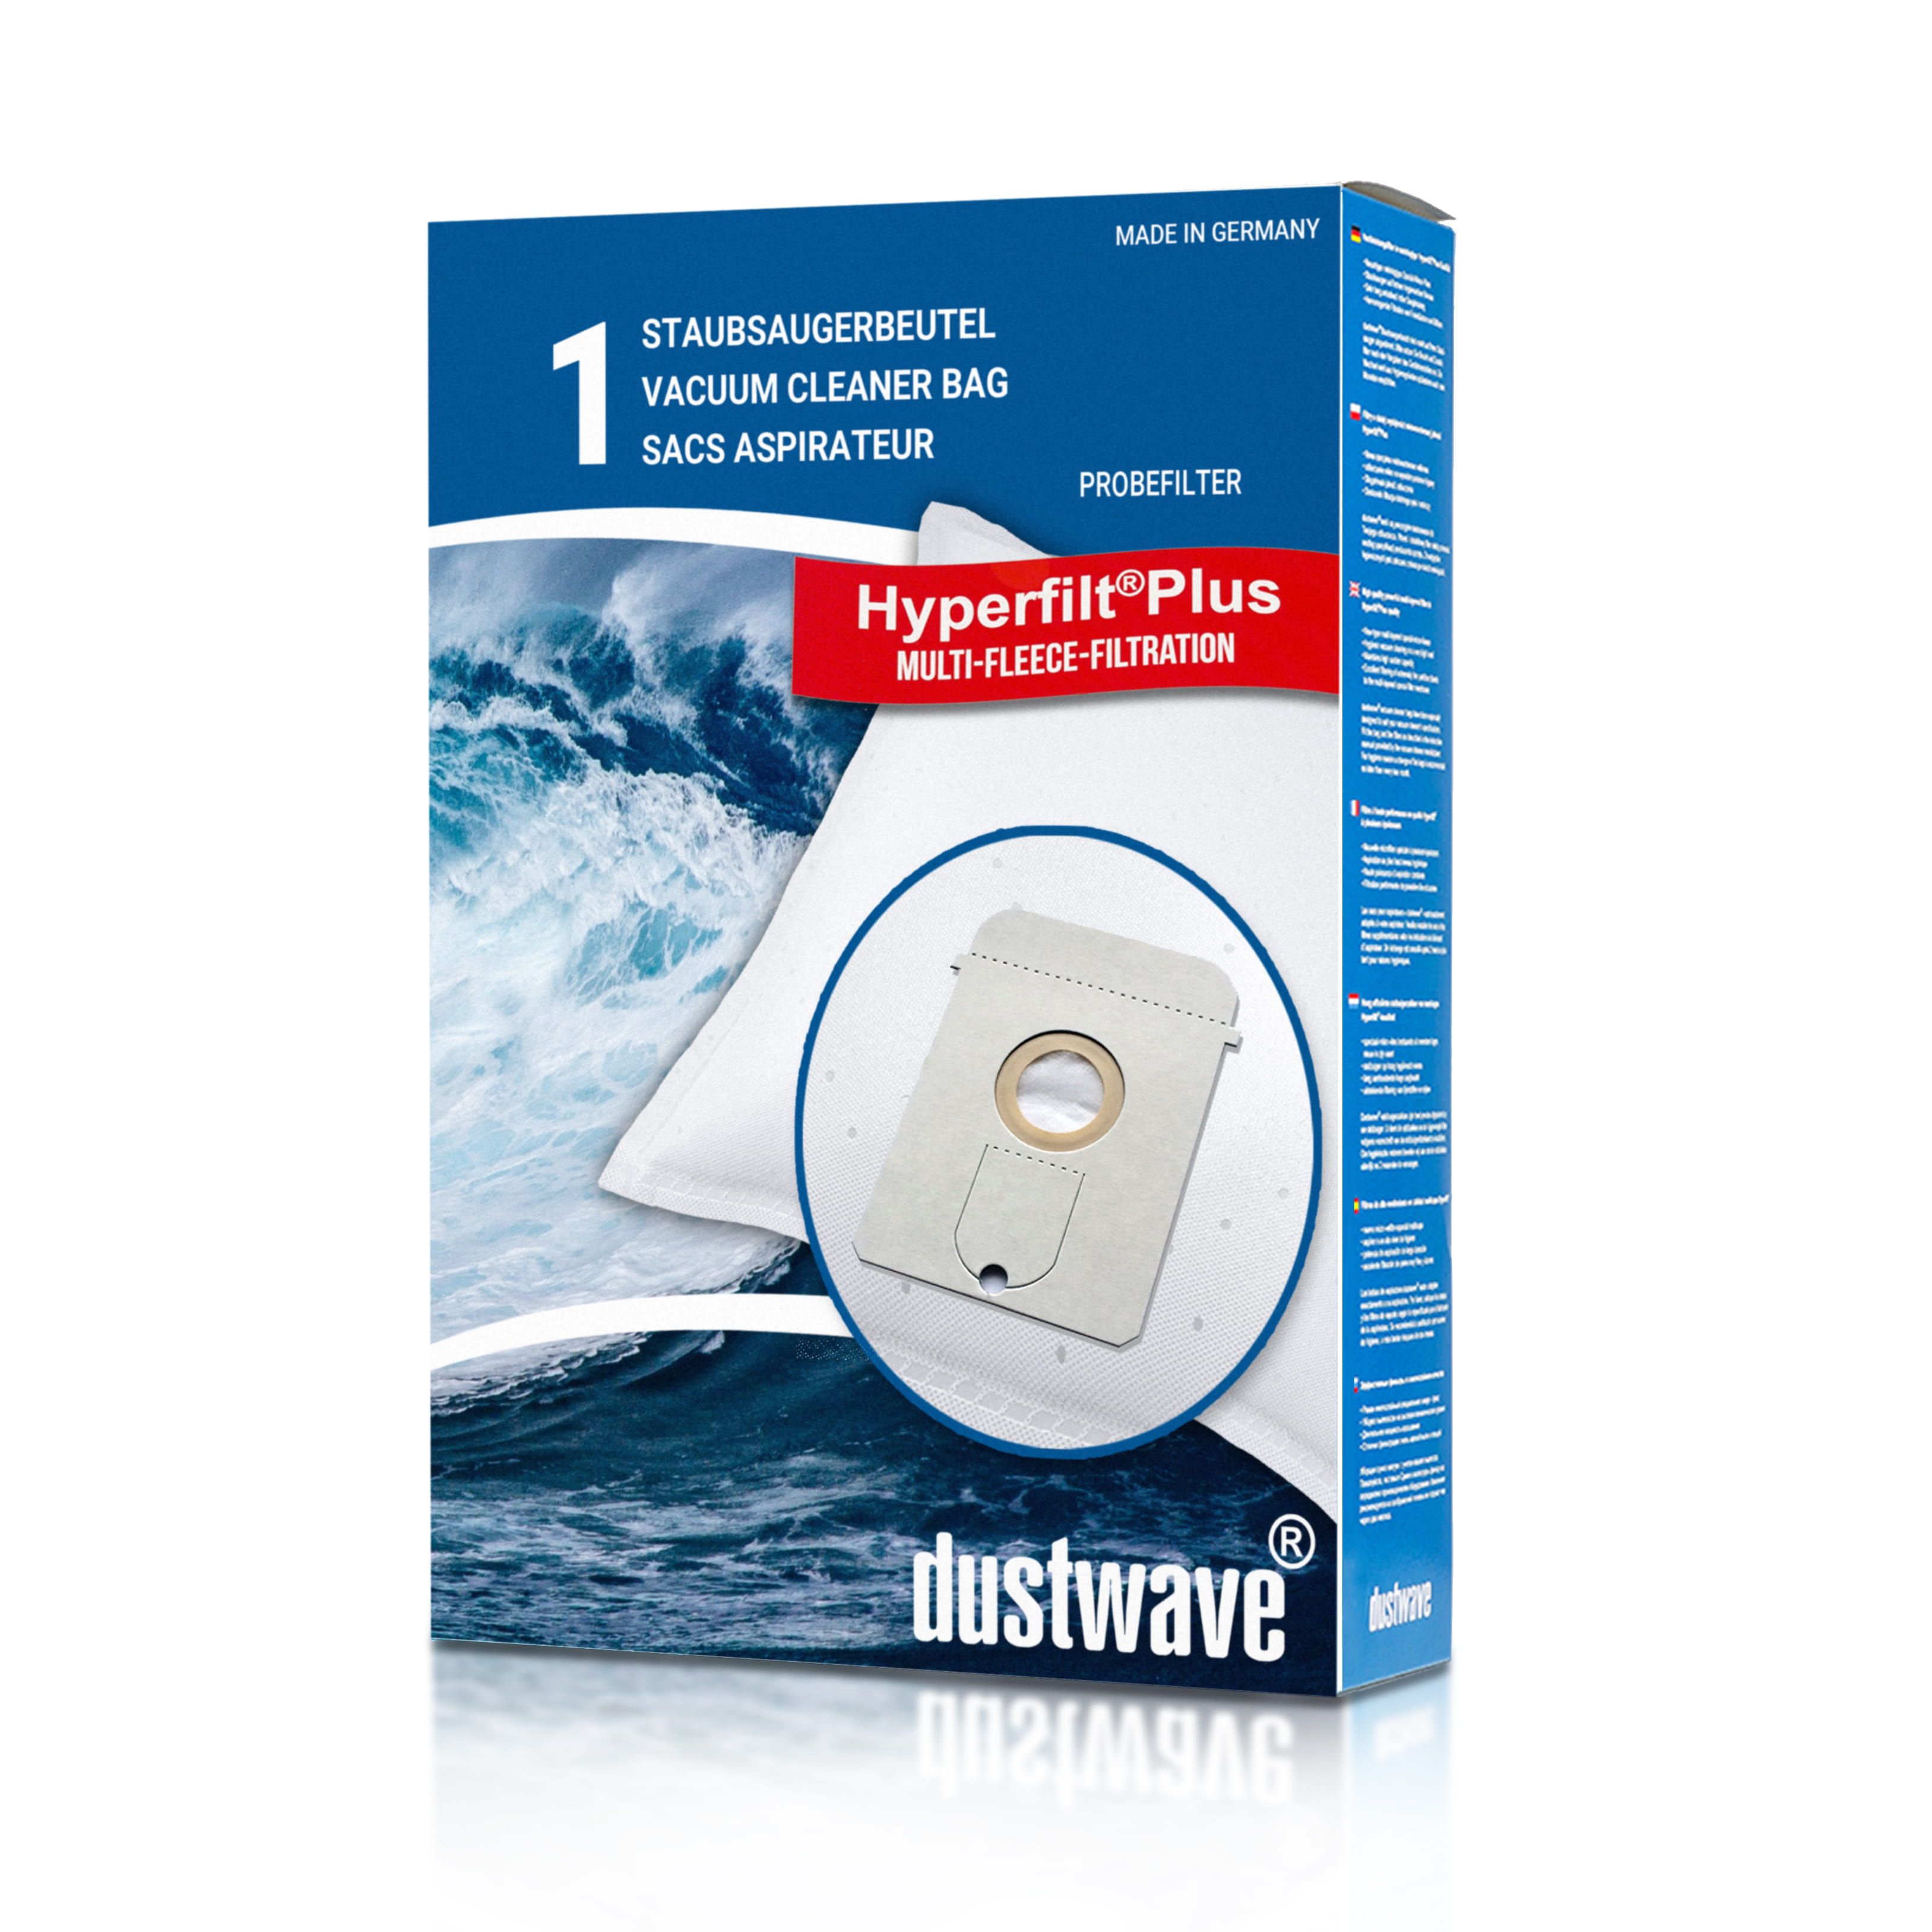 Dustwave® 1 Staubsaugerbeutel für AEG Vampyr 769 i Electronic - hocheffizient, mehrlagiges Mikrovlies mit Hygieneverschluss - Made in Germany